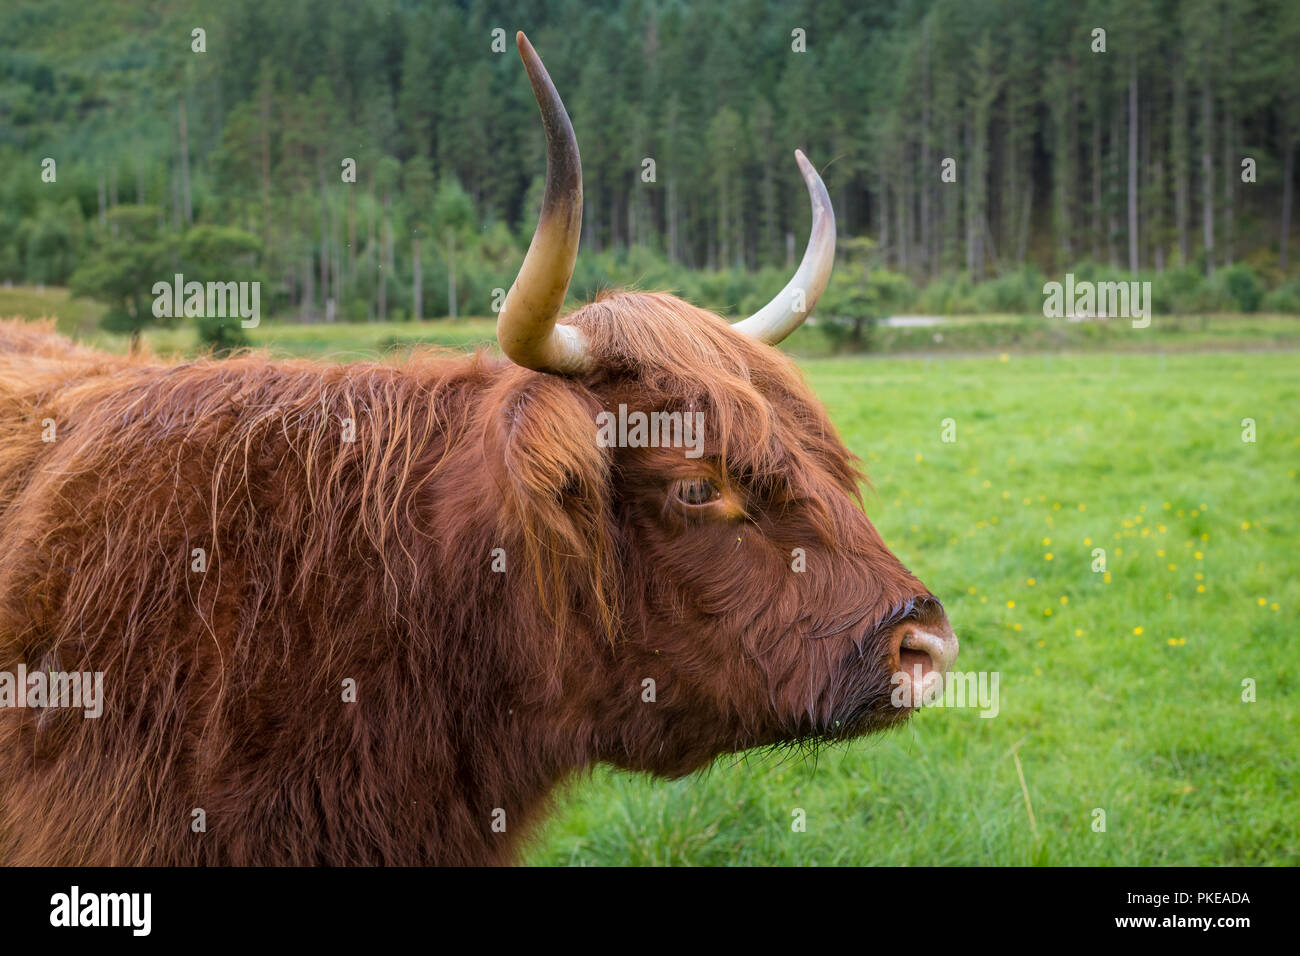 Scottish Highland cattle, Ben Nevis, Highlands, Scotland, UK Banque D'Images